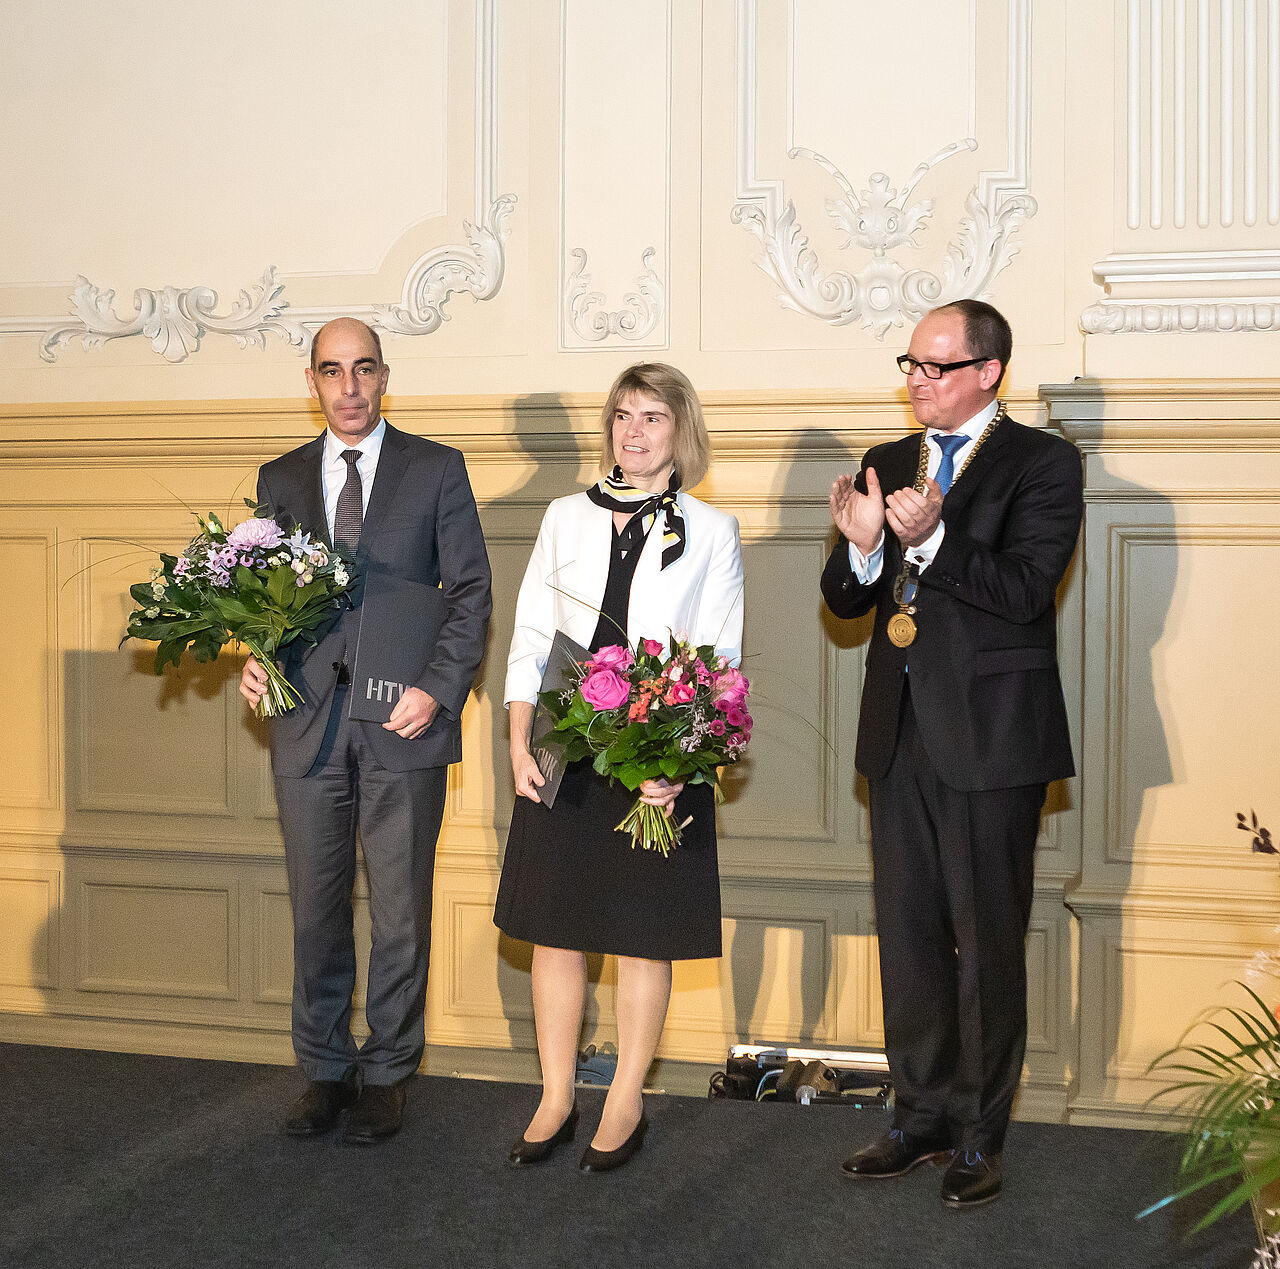 Drei Personen mit Blumen auf Bühne: zwei Männer und in der Mitte eine Frau.